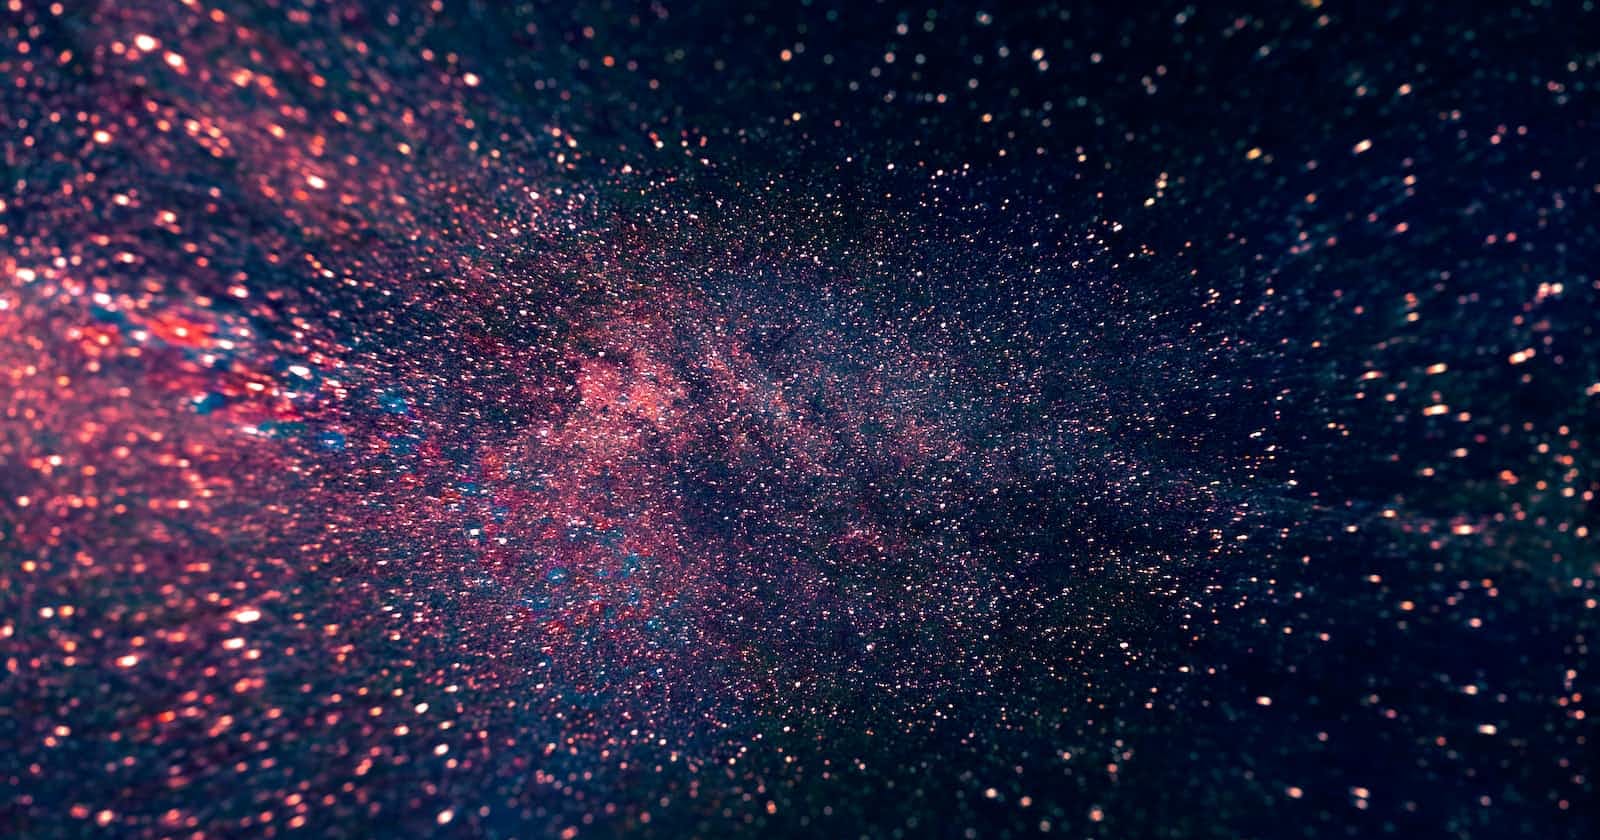 Nebula - 11